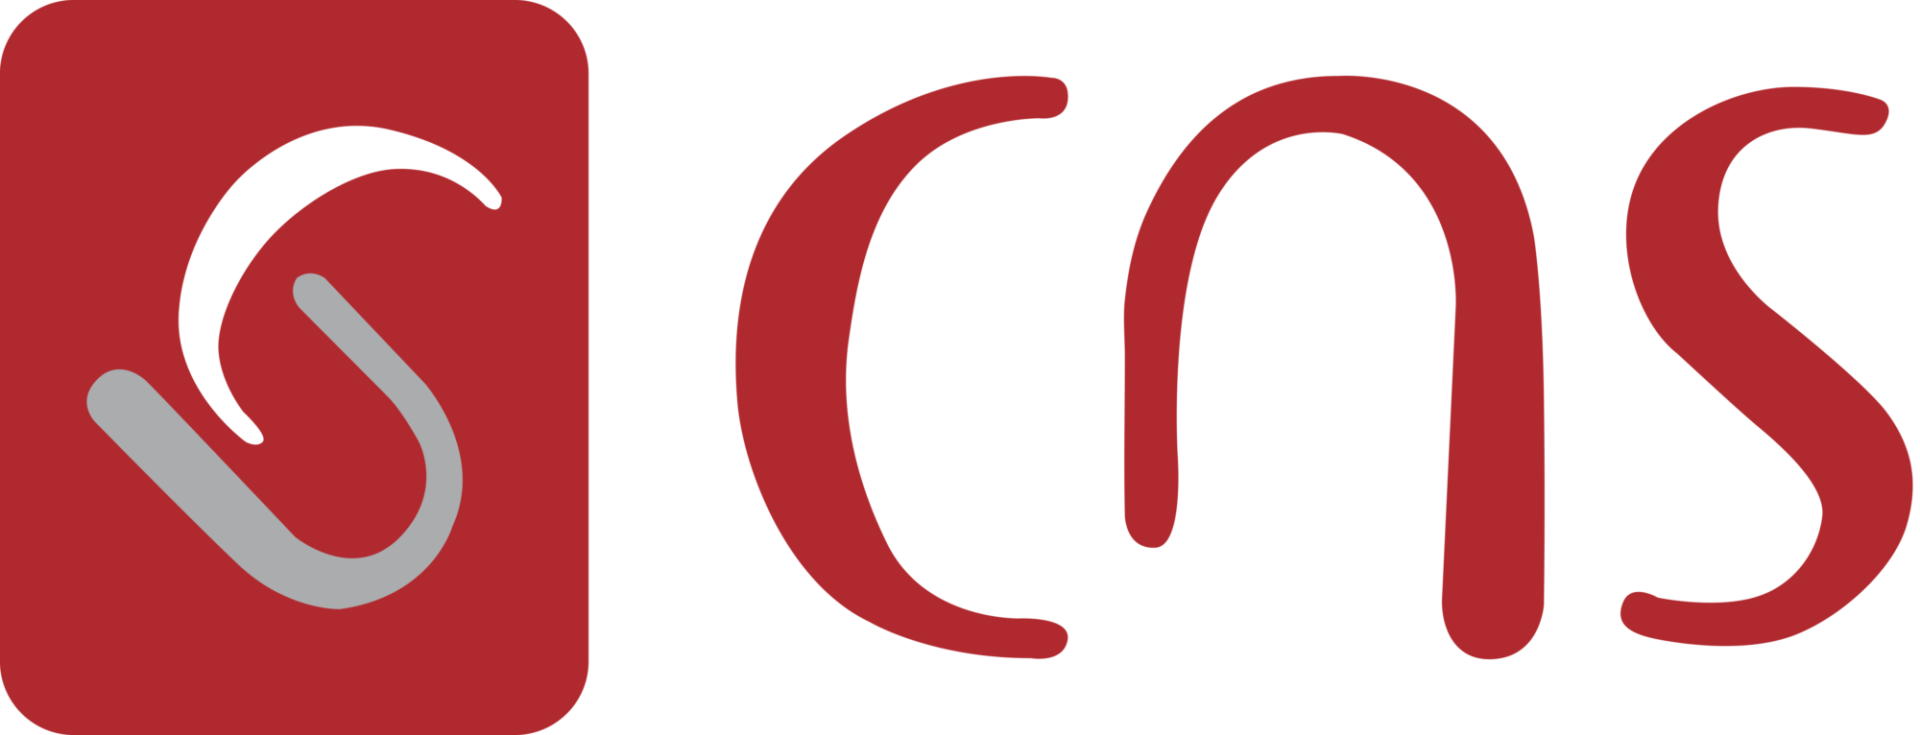 CNS Logo High Res